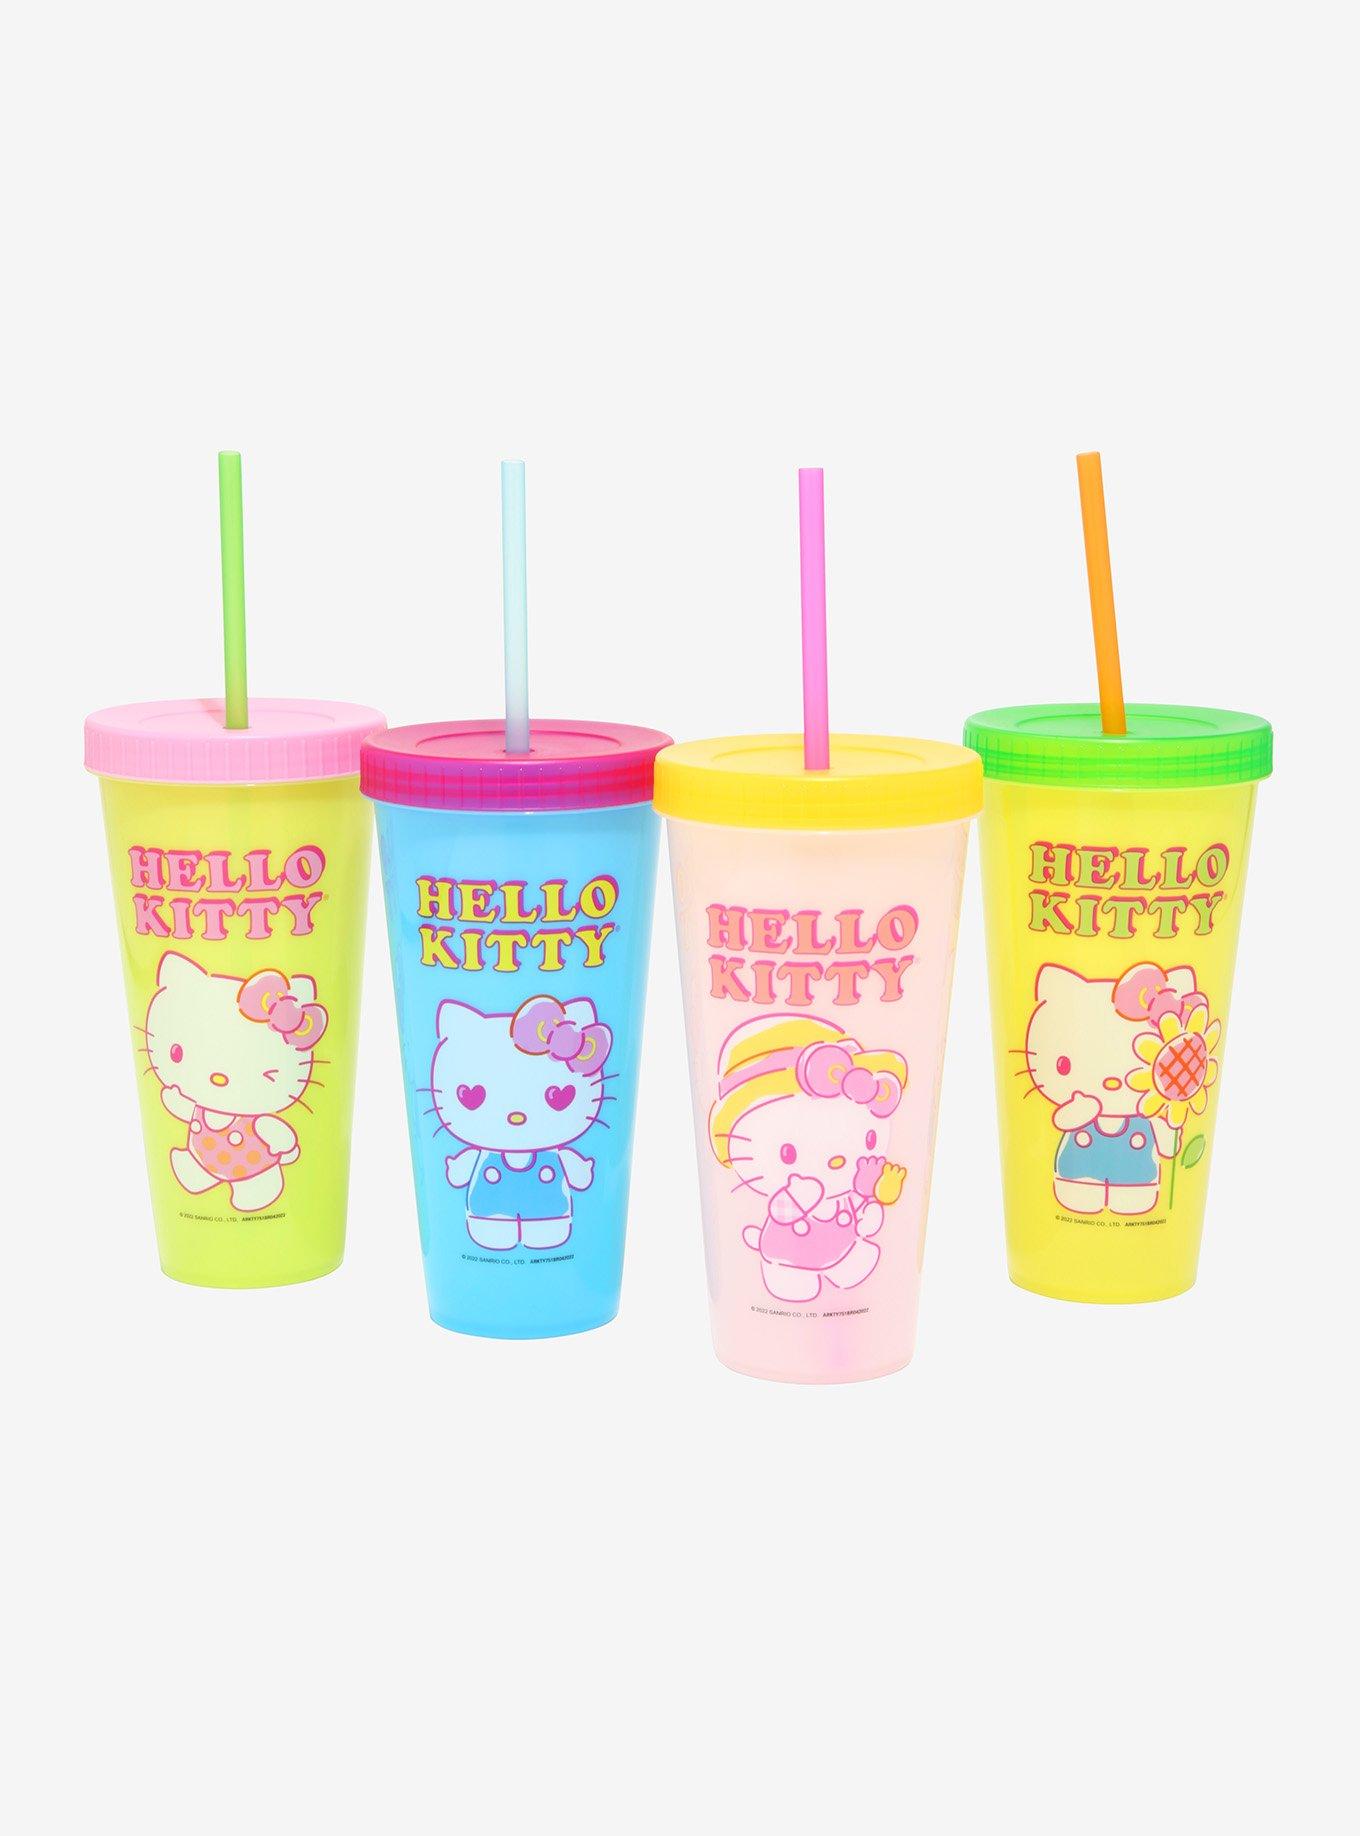 Hello Kitty Hot Drink, Hello Kitty Clothing